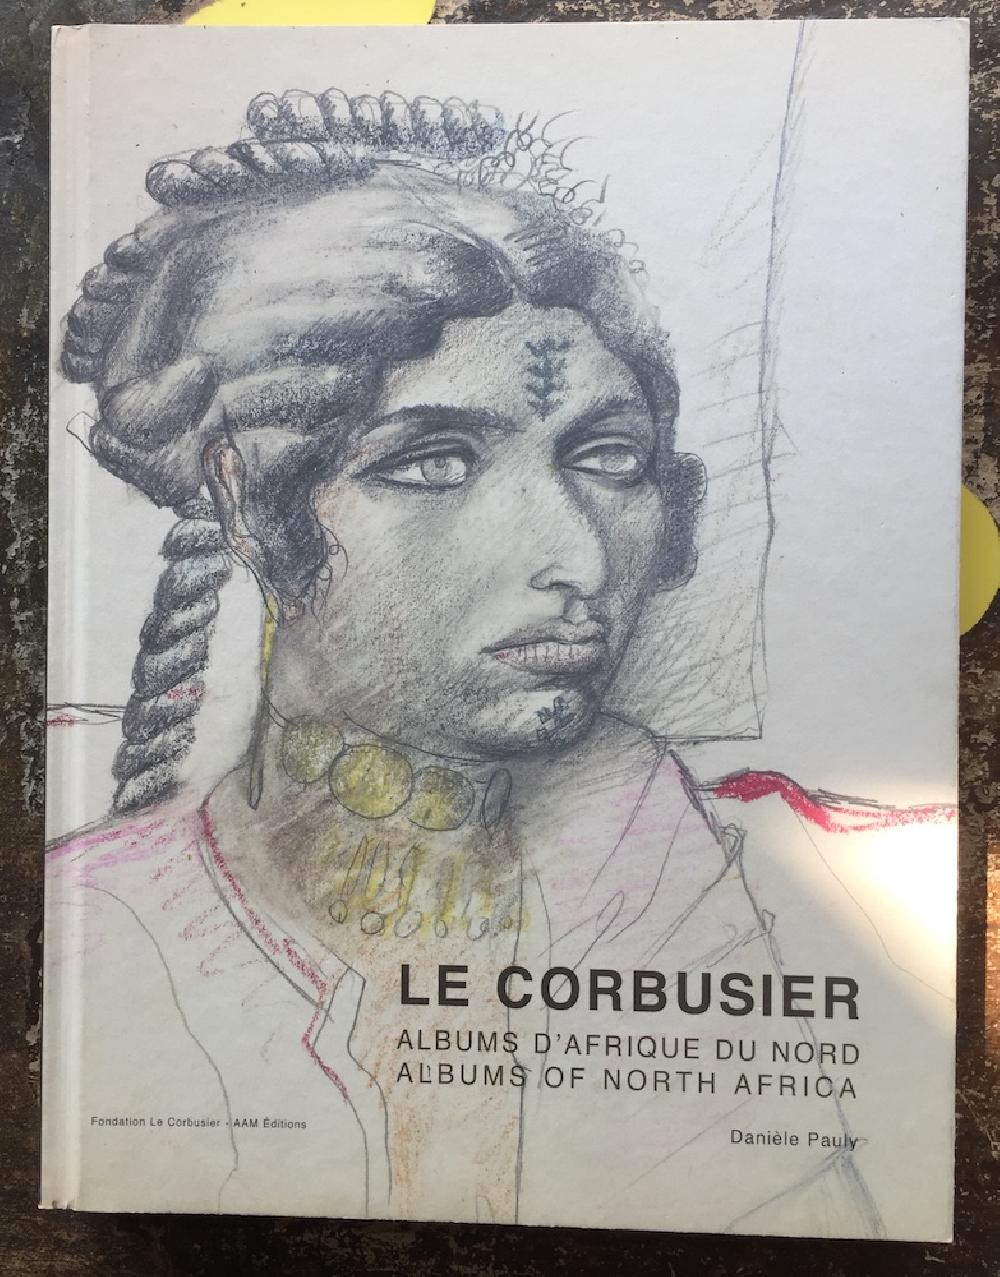 Albums d'Afrique du nord - Le Corbusier